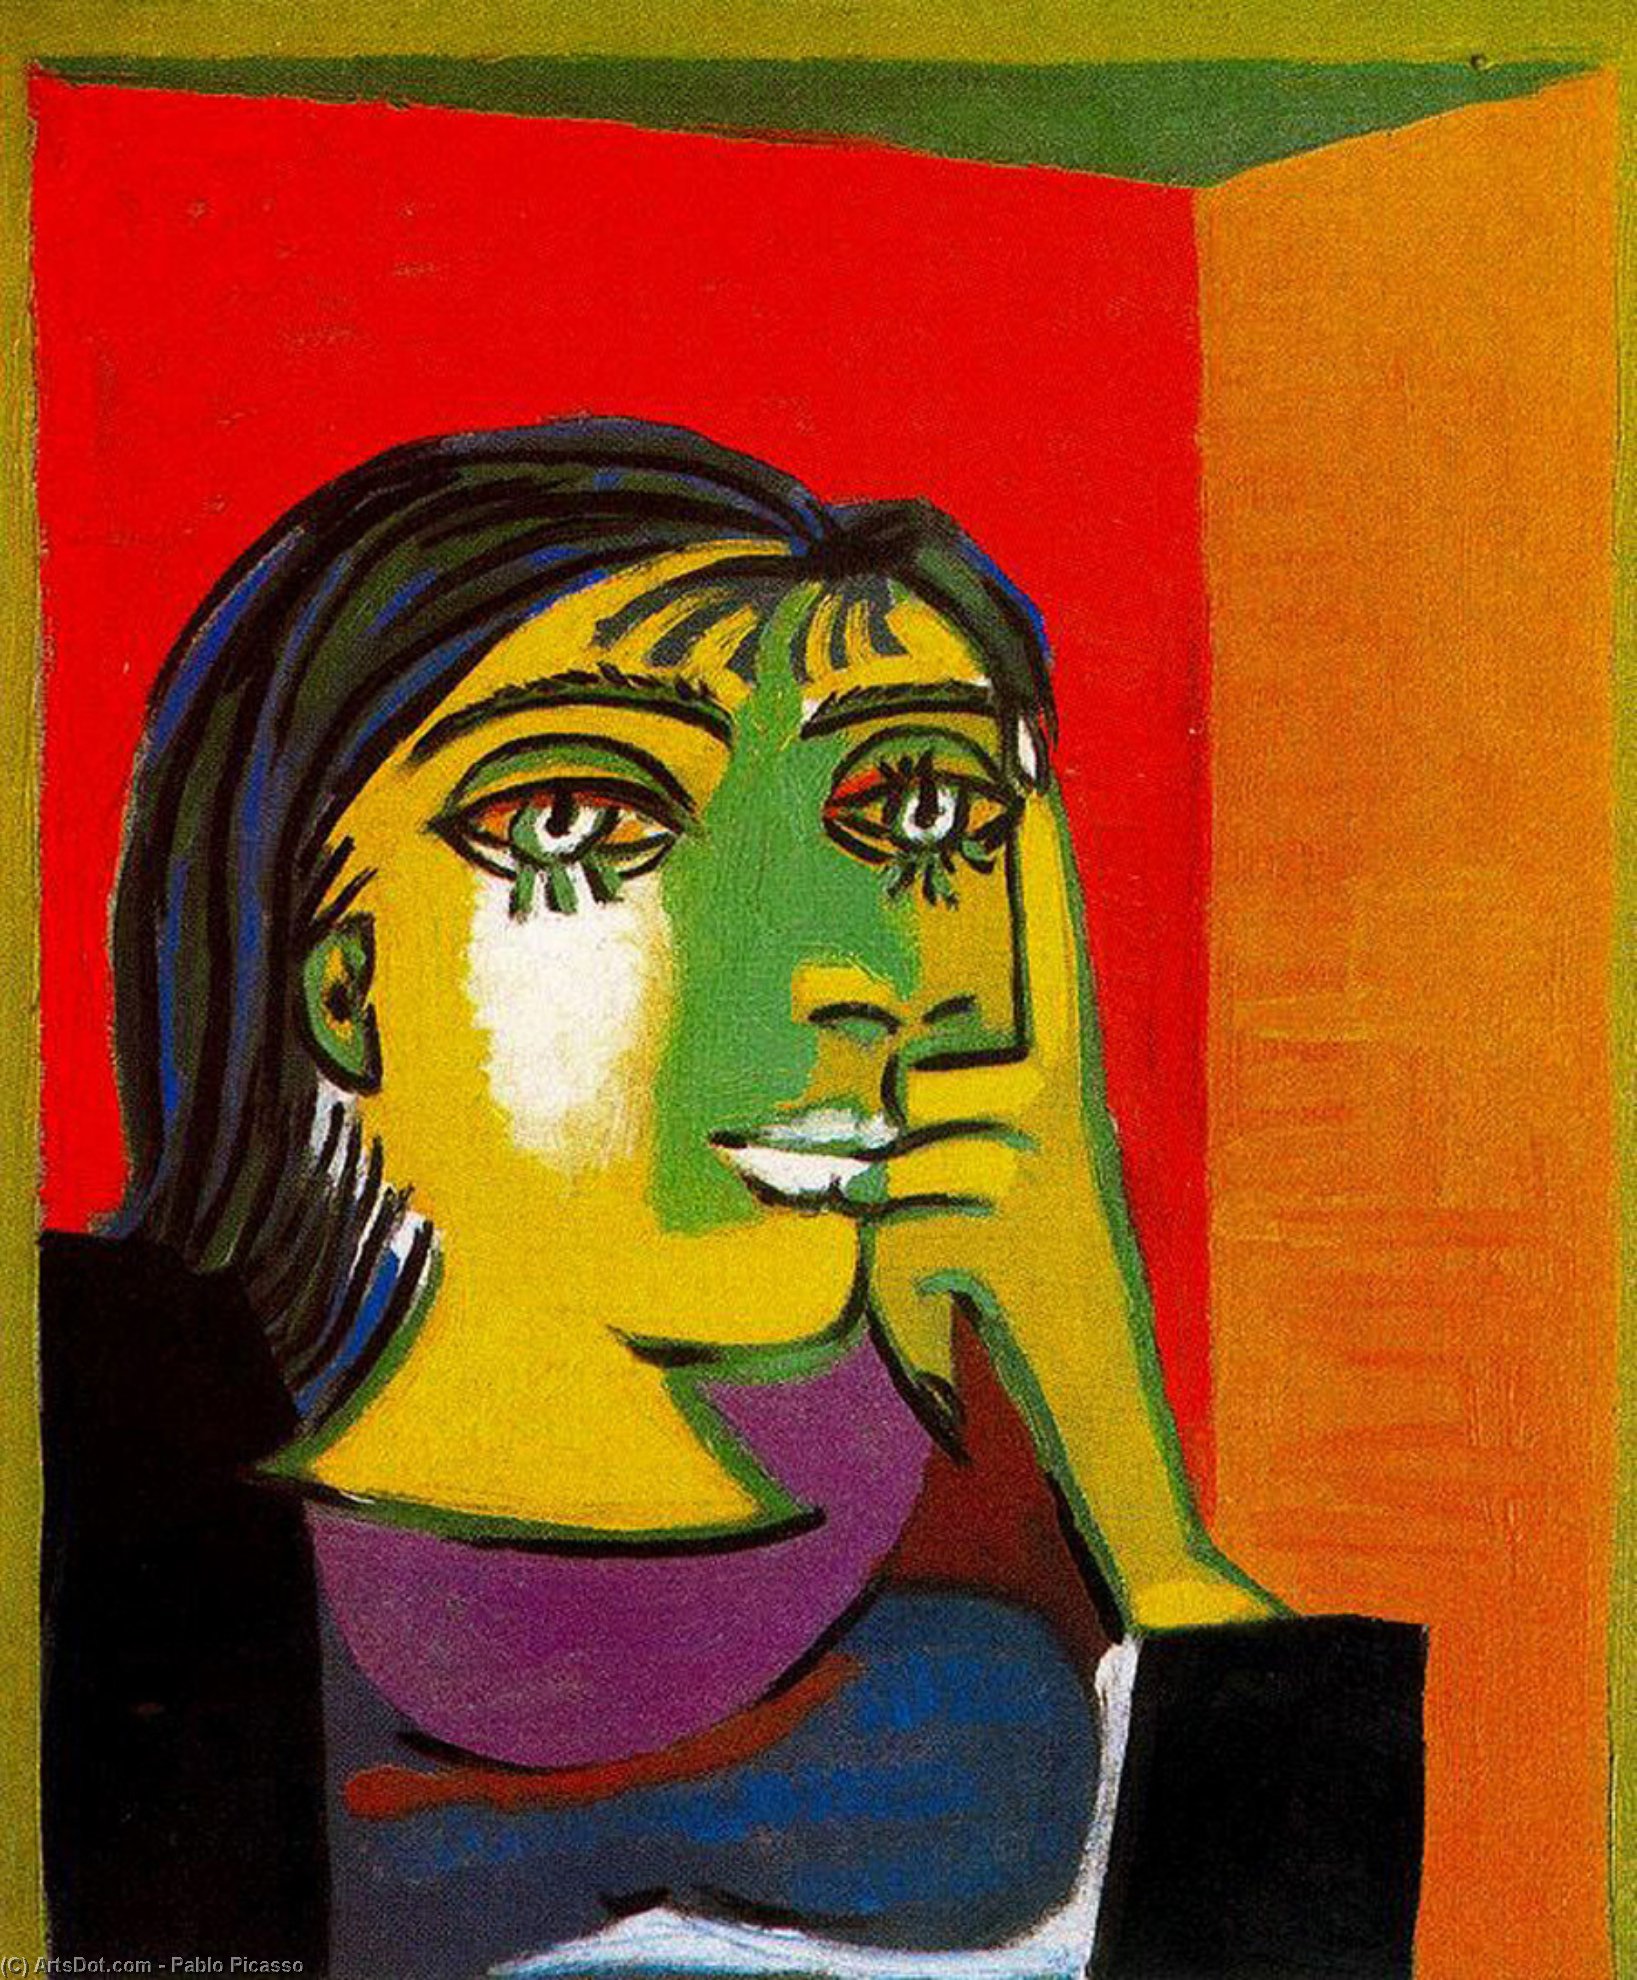 Wikoo.org - موسوعة الفنون الجميلة - اللوحة، العمل الفني Pablo Picasso - Portrait of Dora Maar